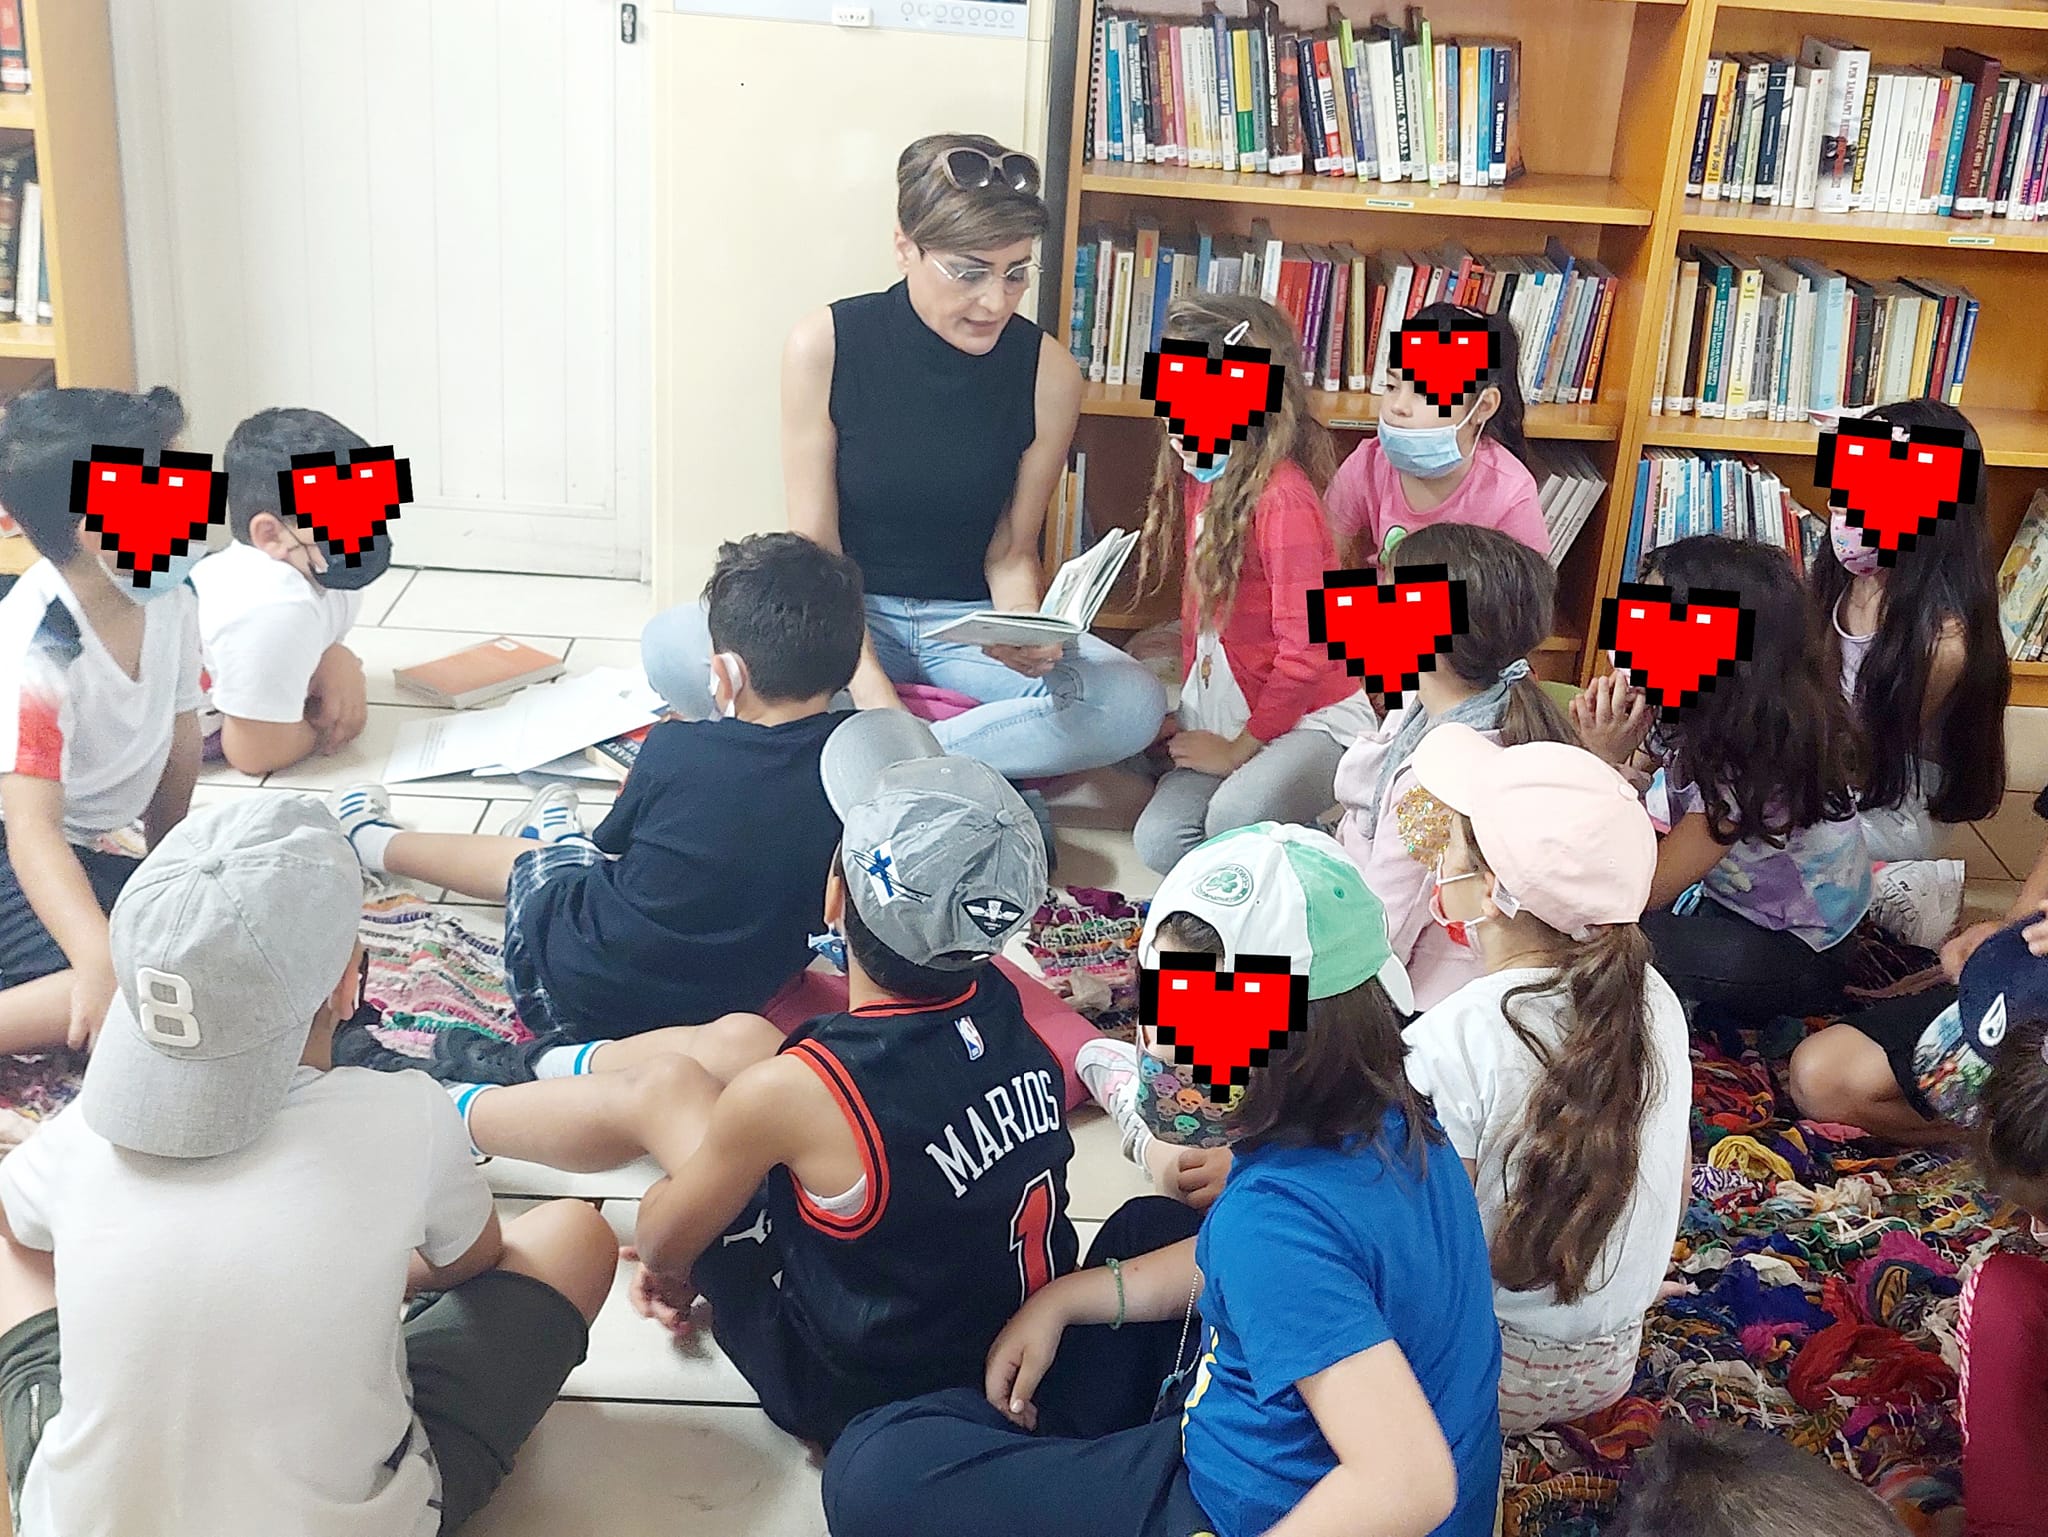 Παιδιά από το Γ’ Δημοτικό Σχολείο Αραδίππου στην Δημοτική Βιβλιοθήκη “Γιάγκος Κωνσταντινίδης”